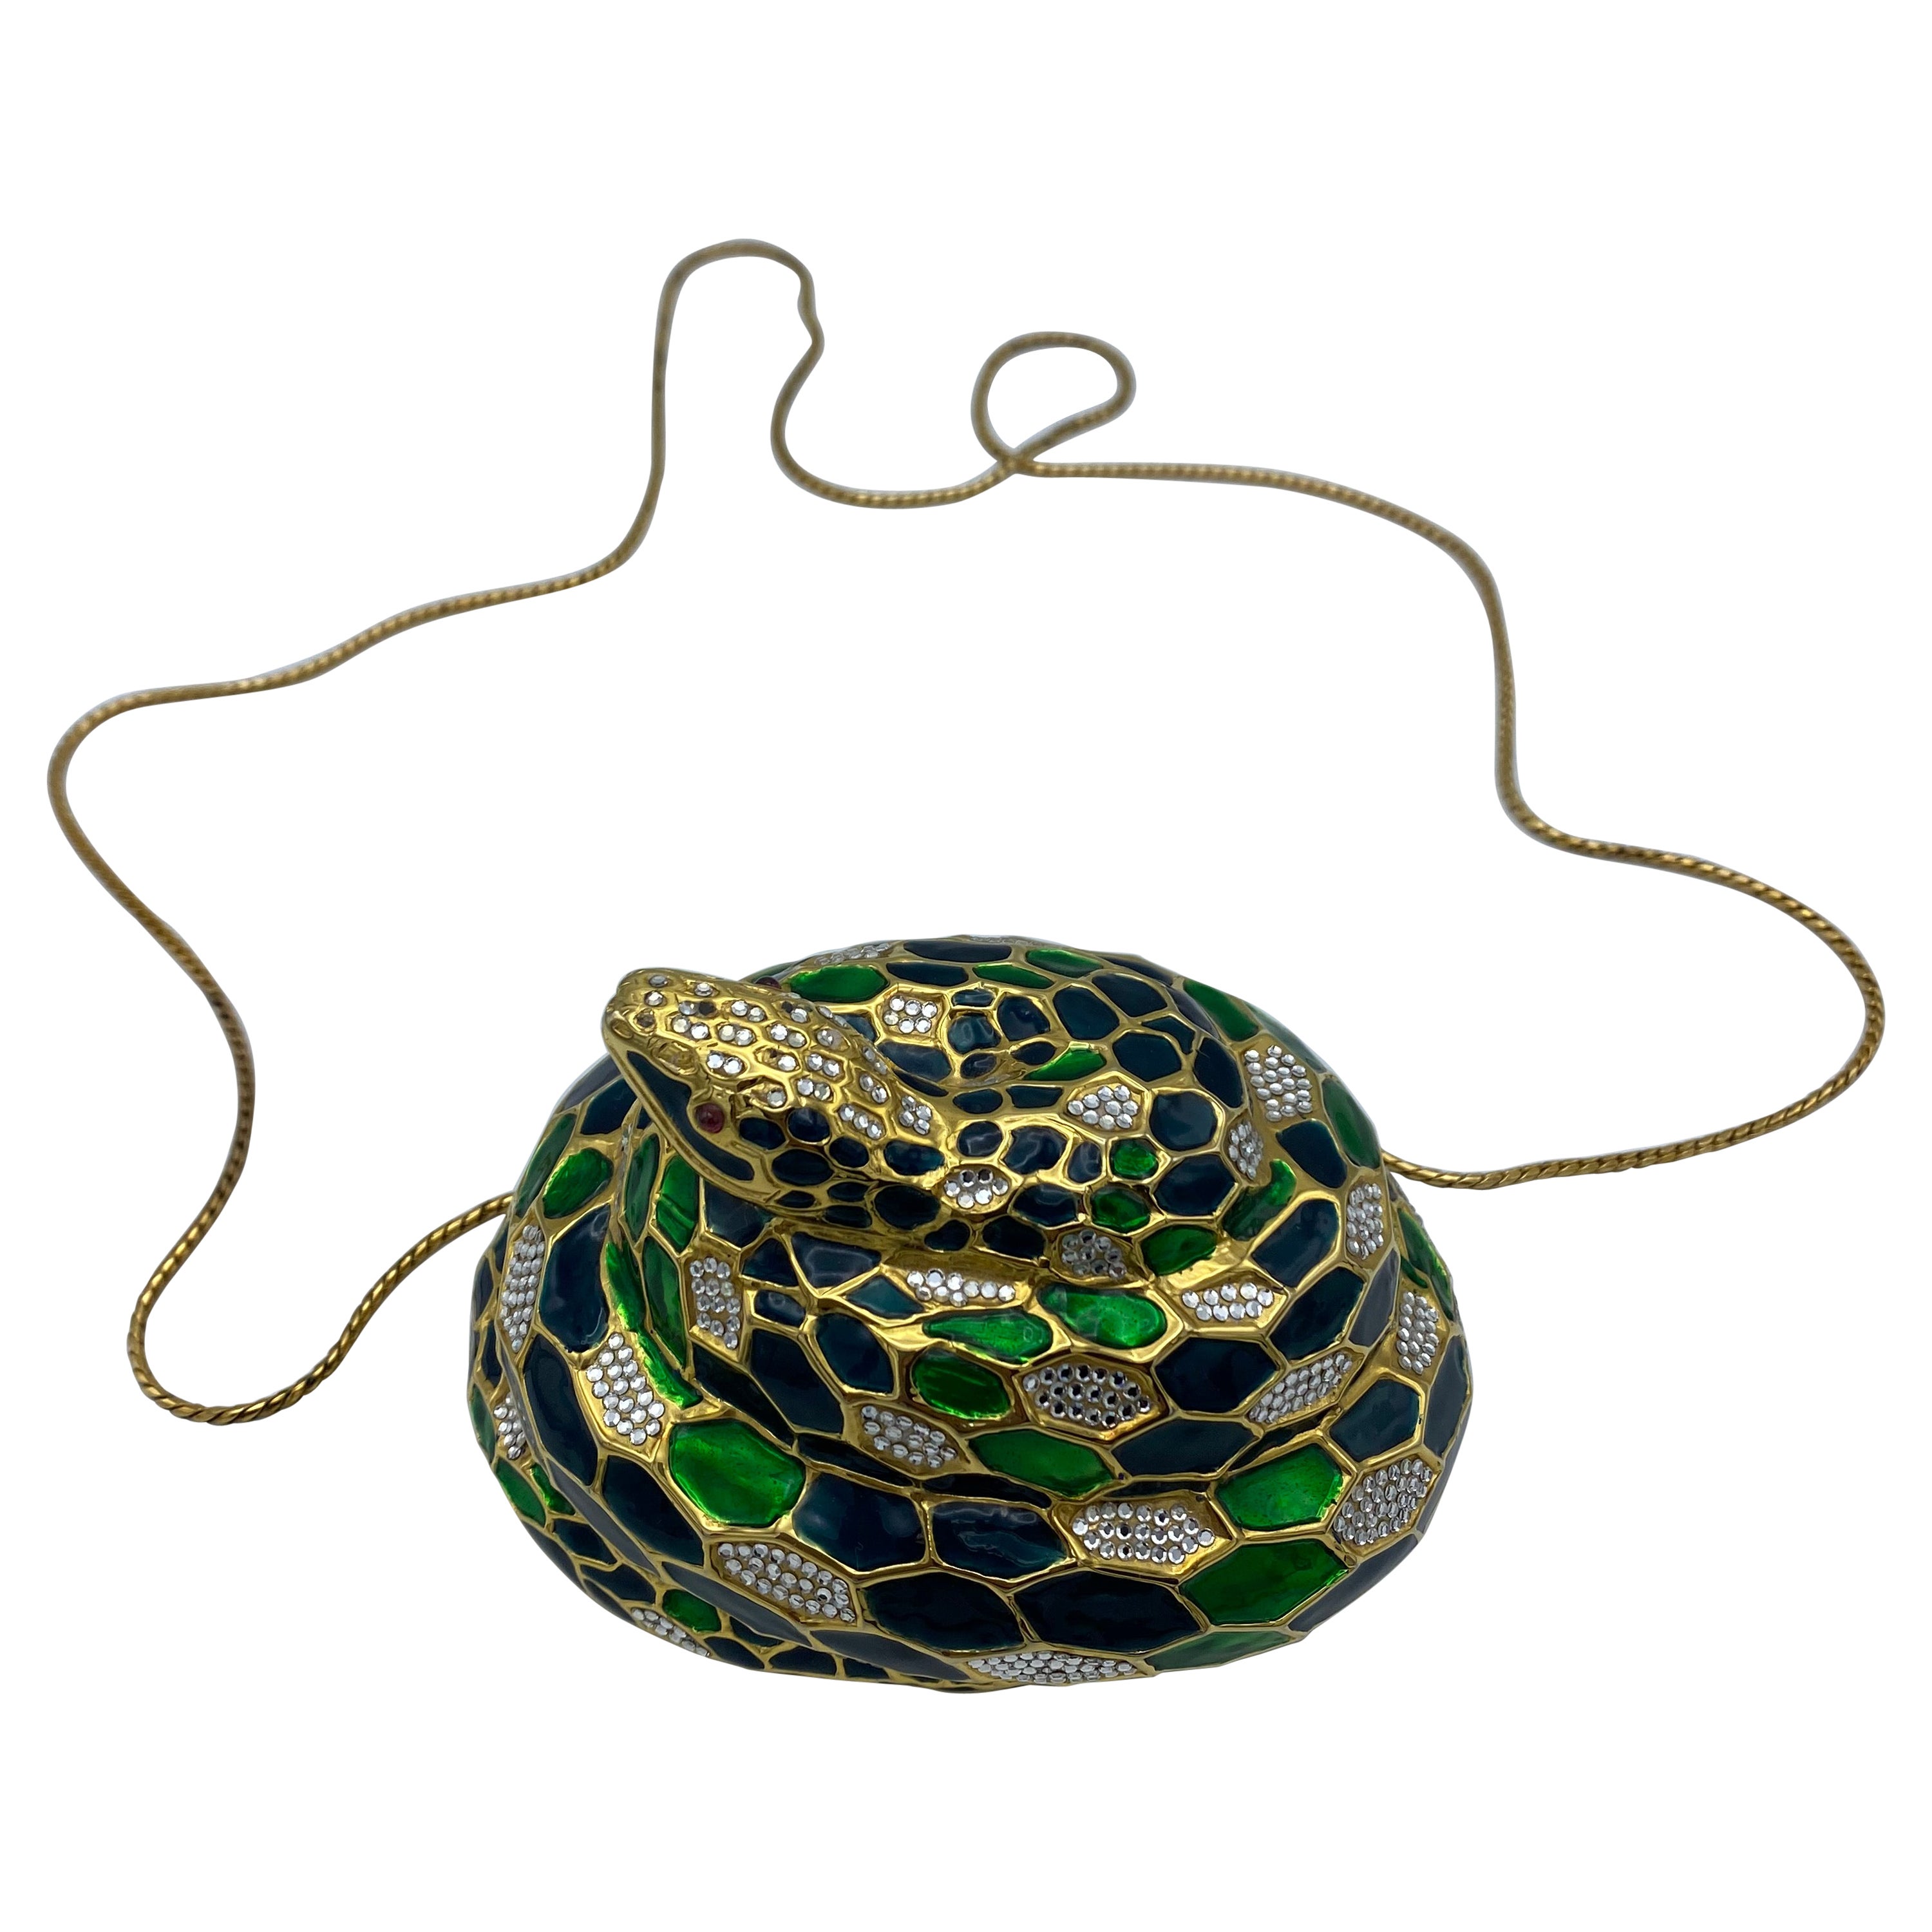 Judith Leiber Snake Crossbody Bags for Women | Mercari